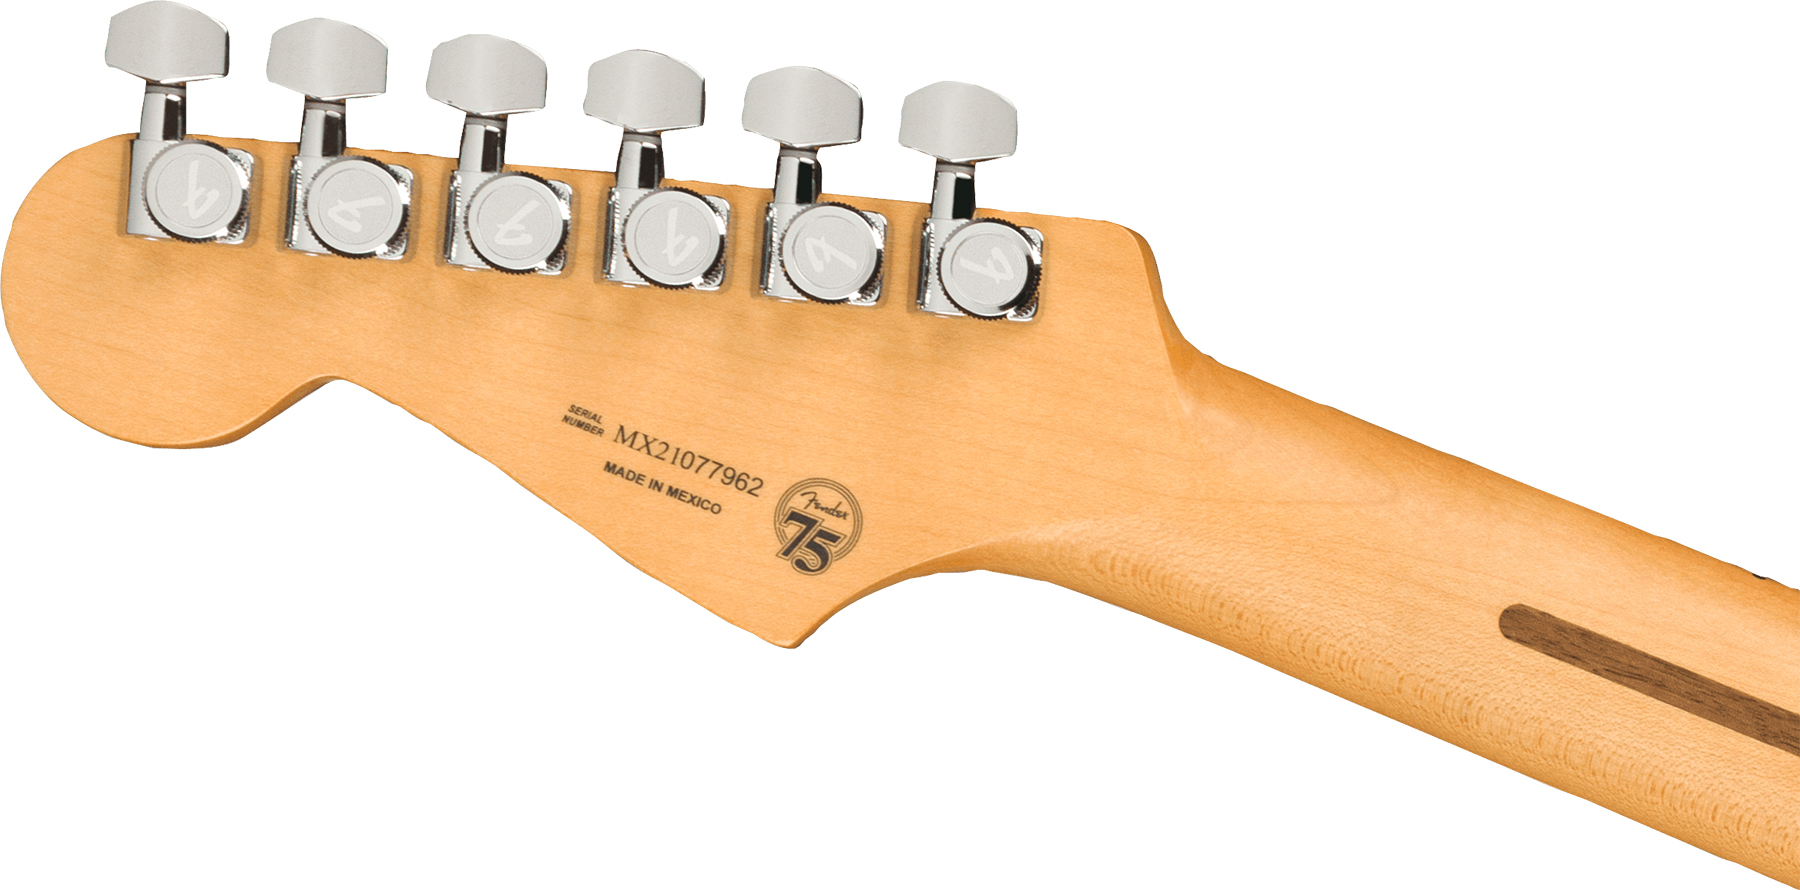 Fender Strat Player Plus Mex Hss Trem Mn - 3-color Sunburst - Guitarra eléctrica con forma de str. - Variation 3